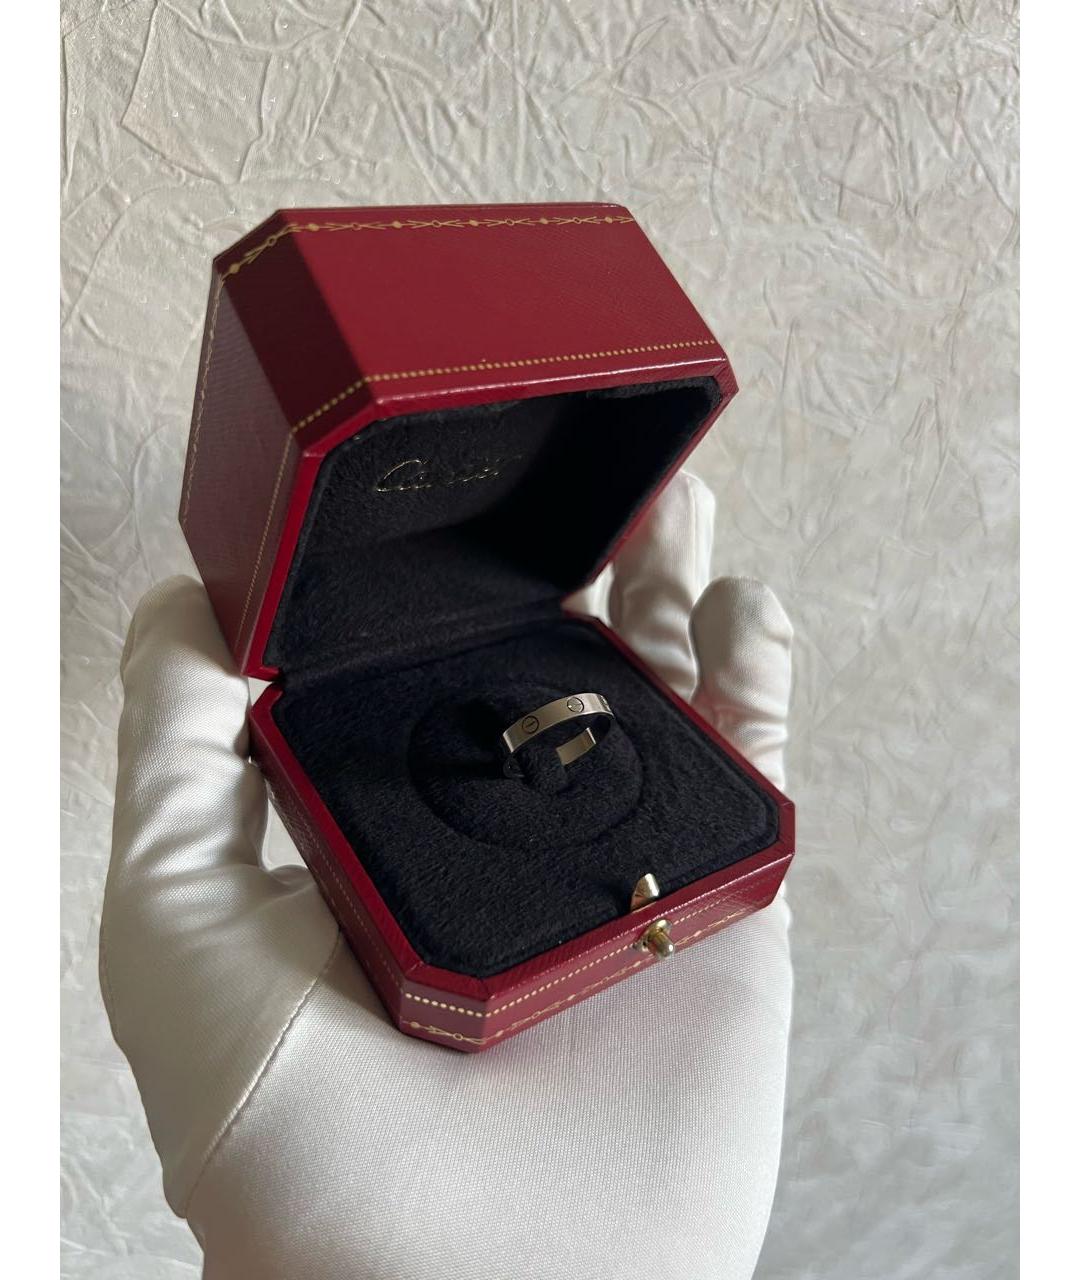 CARTIER Антрацитовое кольцо из белого золота, фото 2